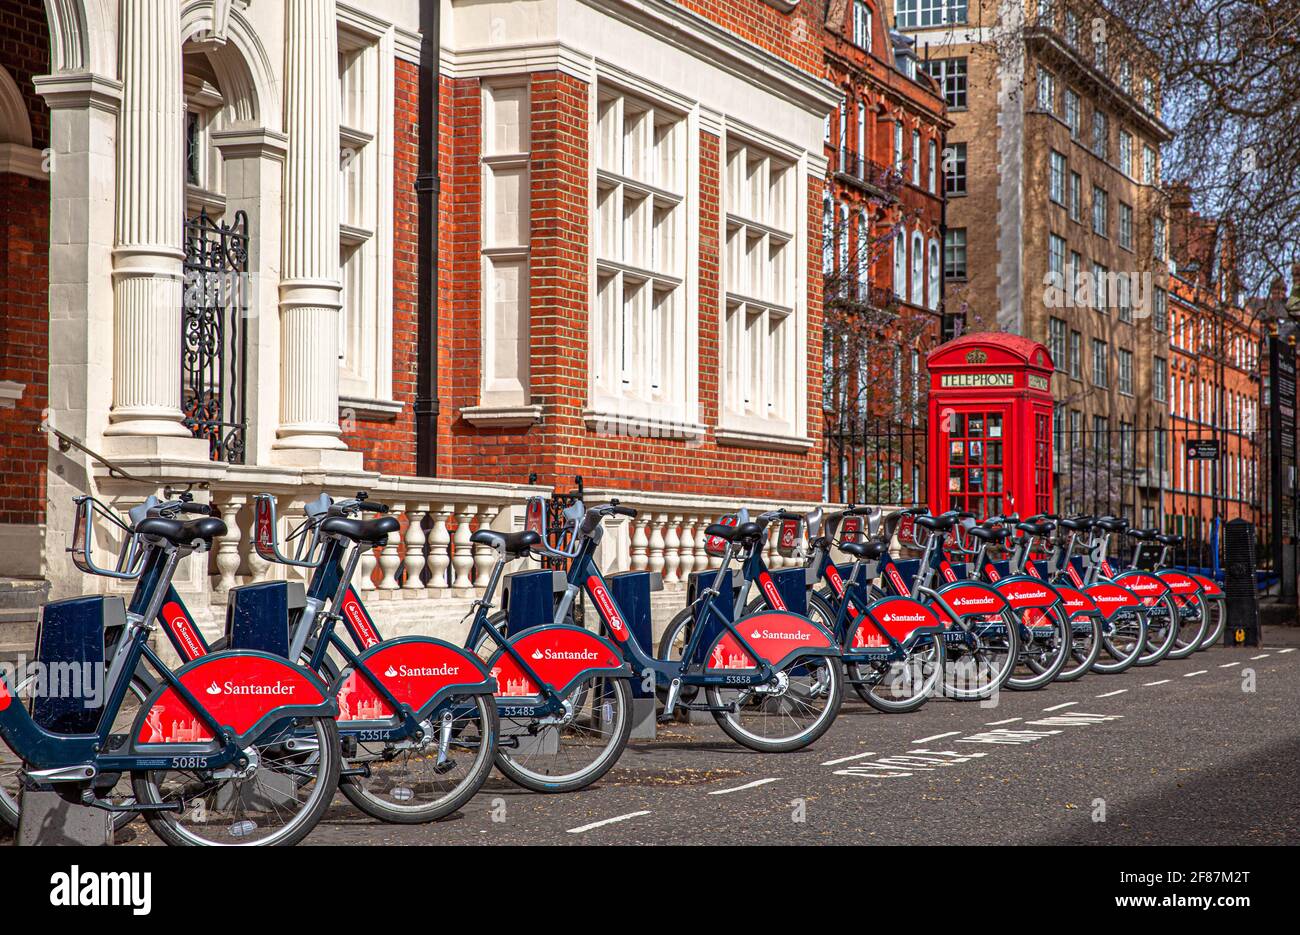 Stazione di aggancio Santander Cycles, St Audley Street, Mayfair, Londra, Inghilterra, REGNO UNITO. Foto Stock